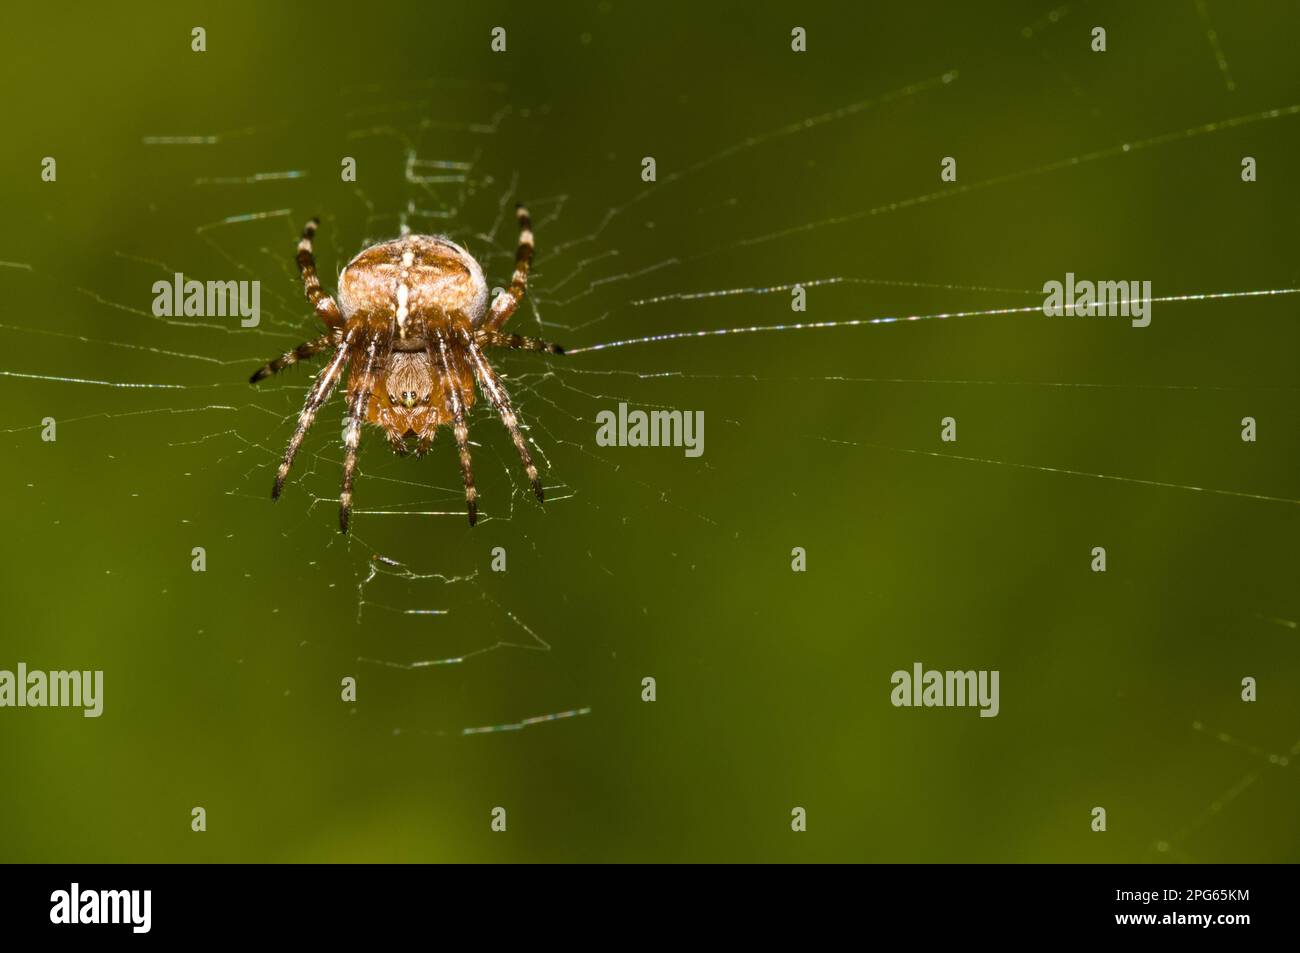 Gartenkreuz-Spinne, Gartenkreuz-Spinne, europäische Gartenspinne (Araneus diadematus), andere Tiere, Spinnen, Arachniden, Tiere, Radspinnen Stockfoto